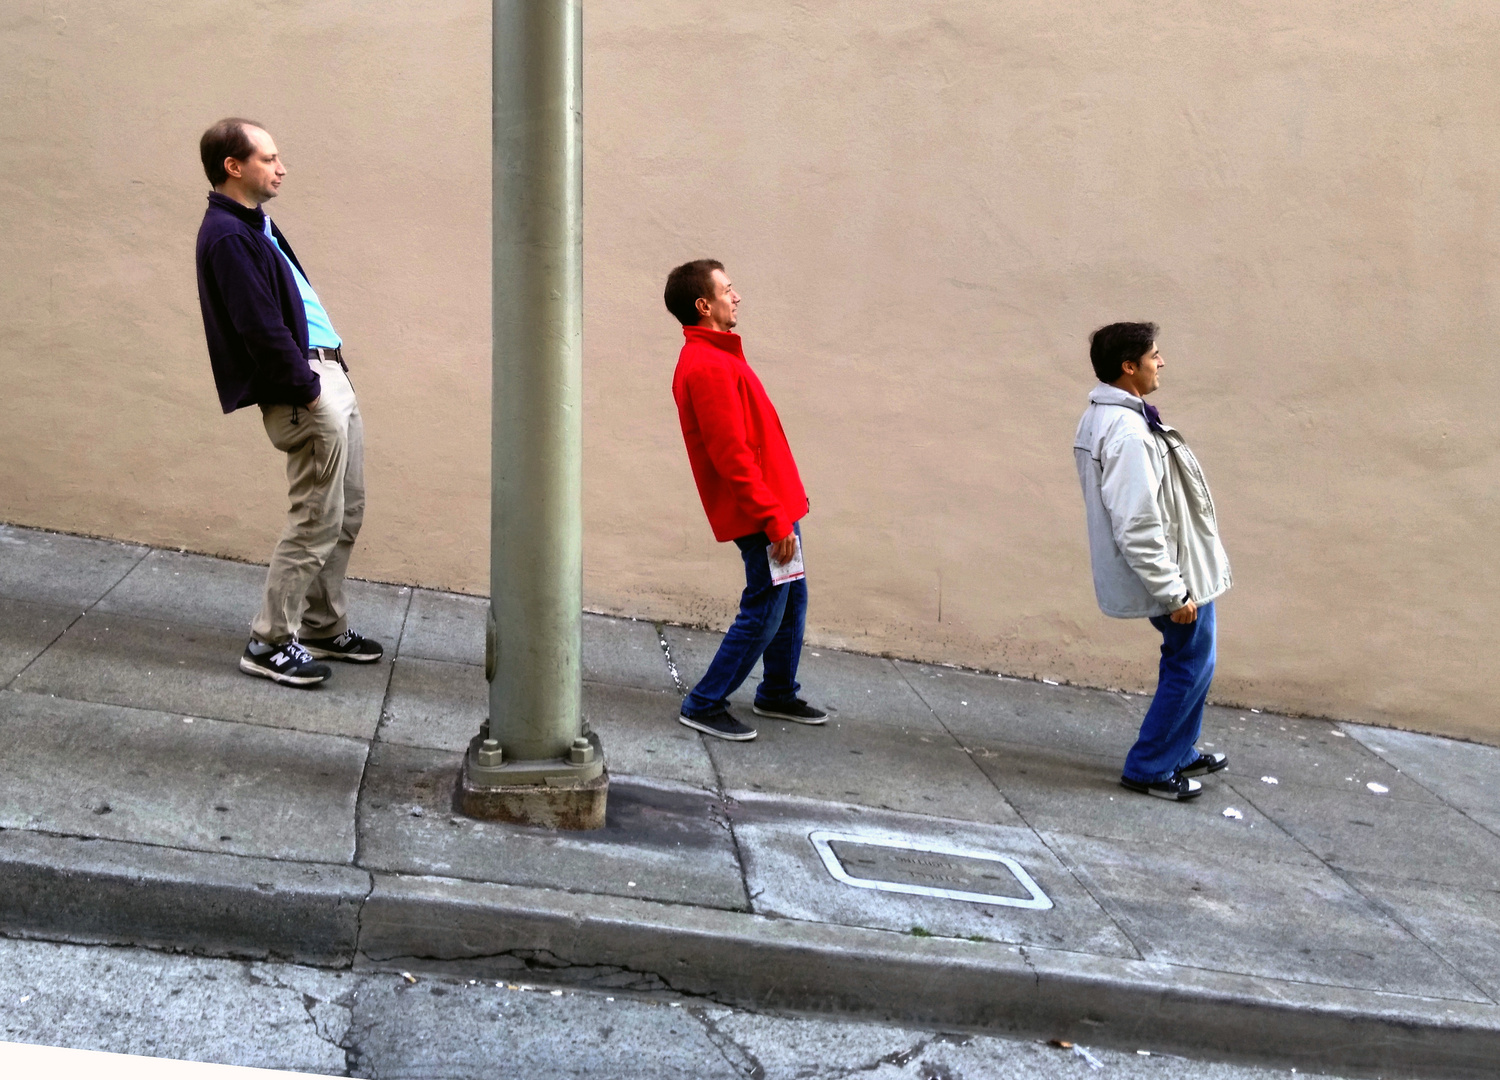 Bajando una calle de San Francisco (pendiente de 10º!